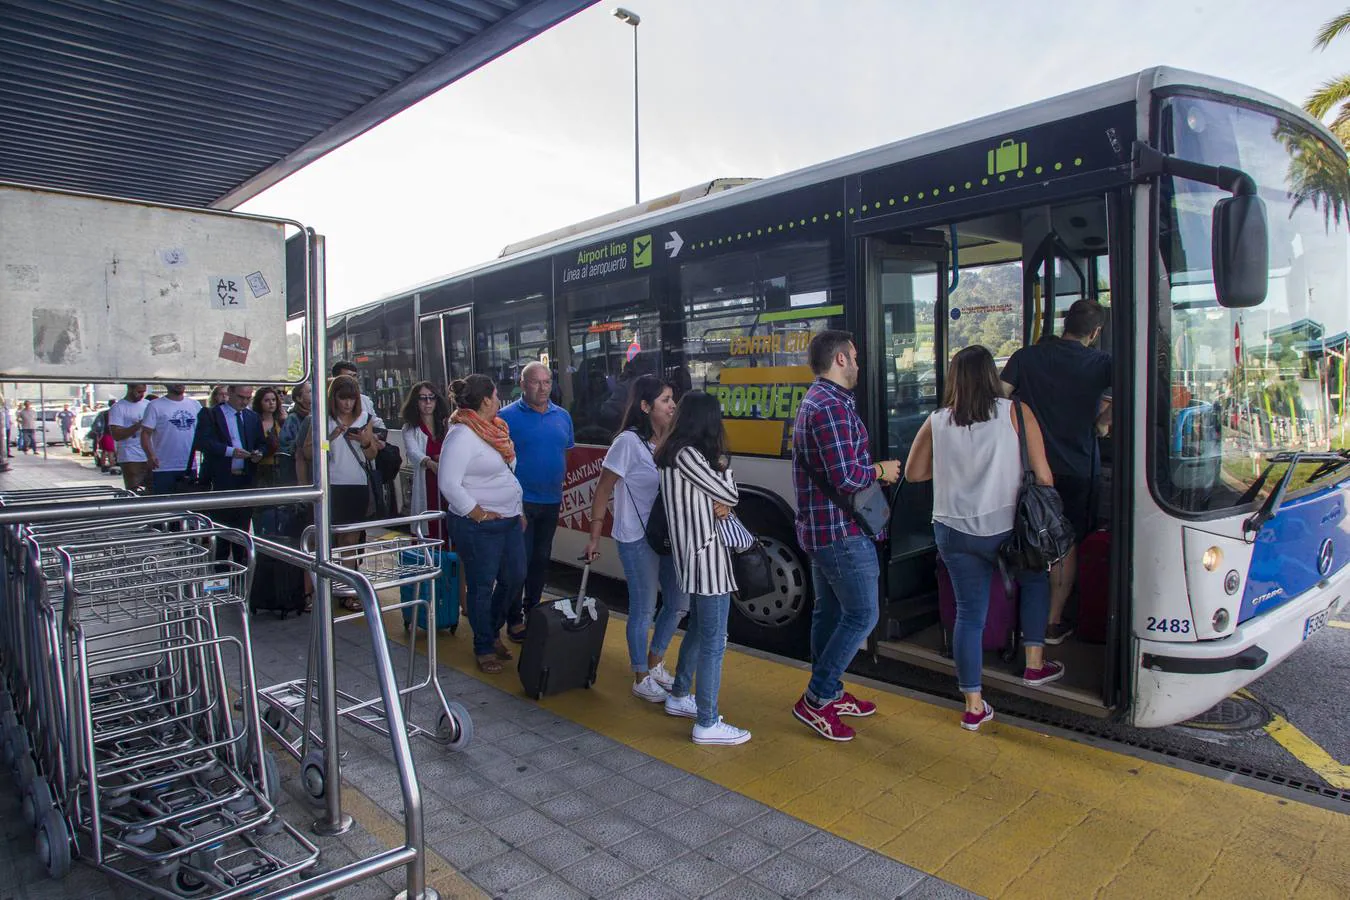 Los taxistas cántabros se han sumado a la huelga convocada a nivel estatal para reivindicar la limitación de las licencias de VTC (alquiler de vehículos con conductor). Hay concentraciones de taxis en el aeropuerto y en las estaciones de Santander.